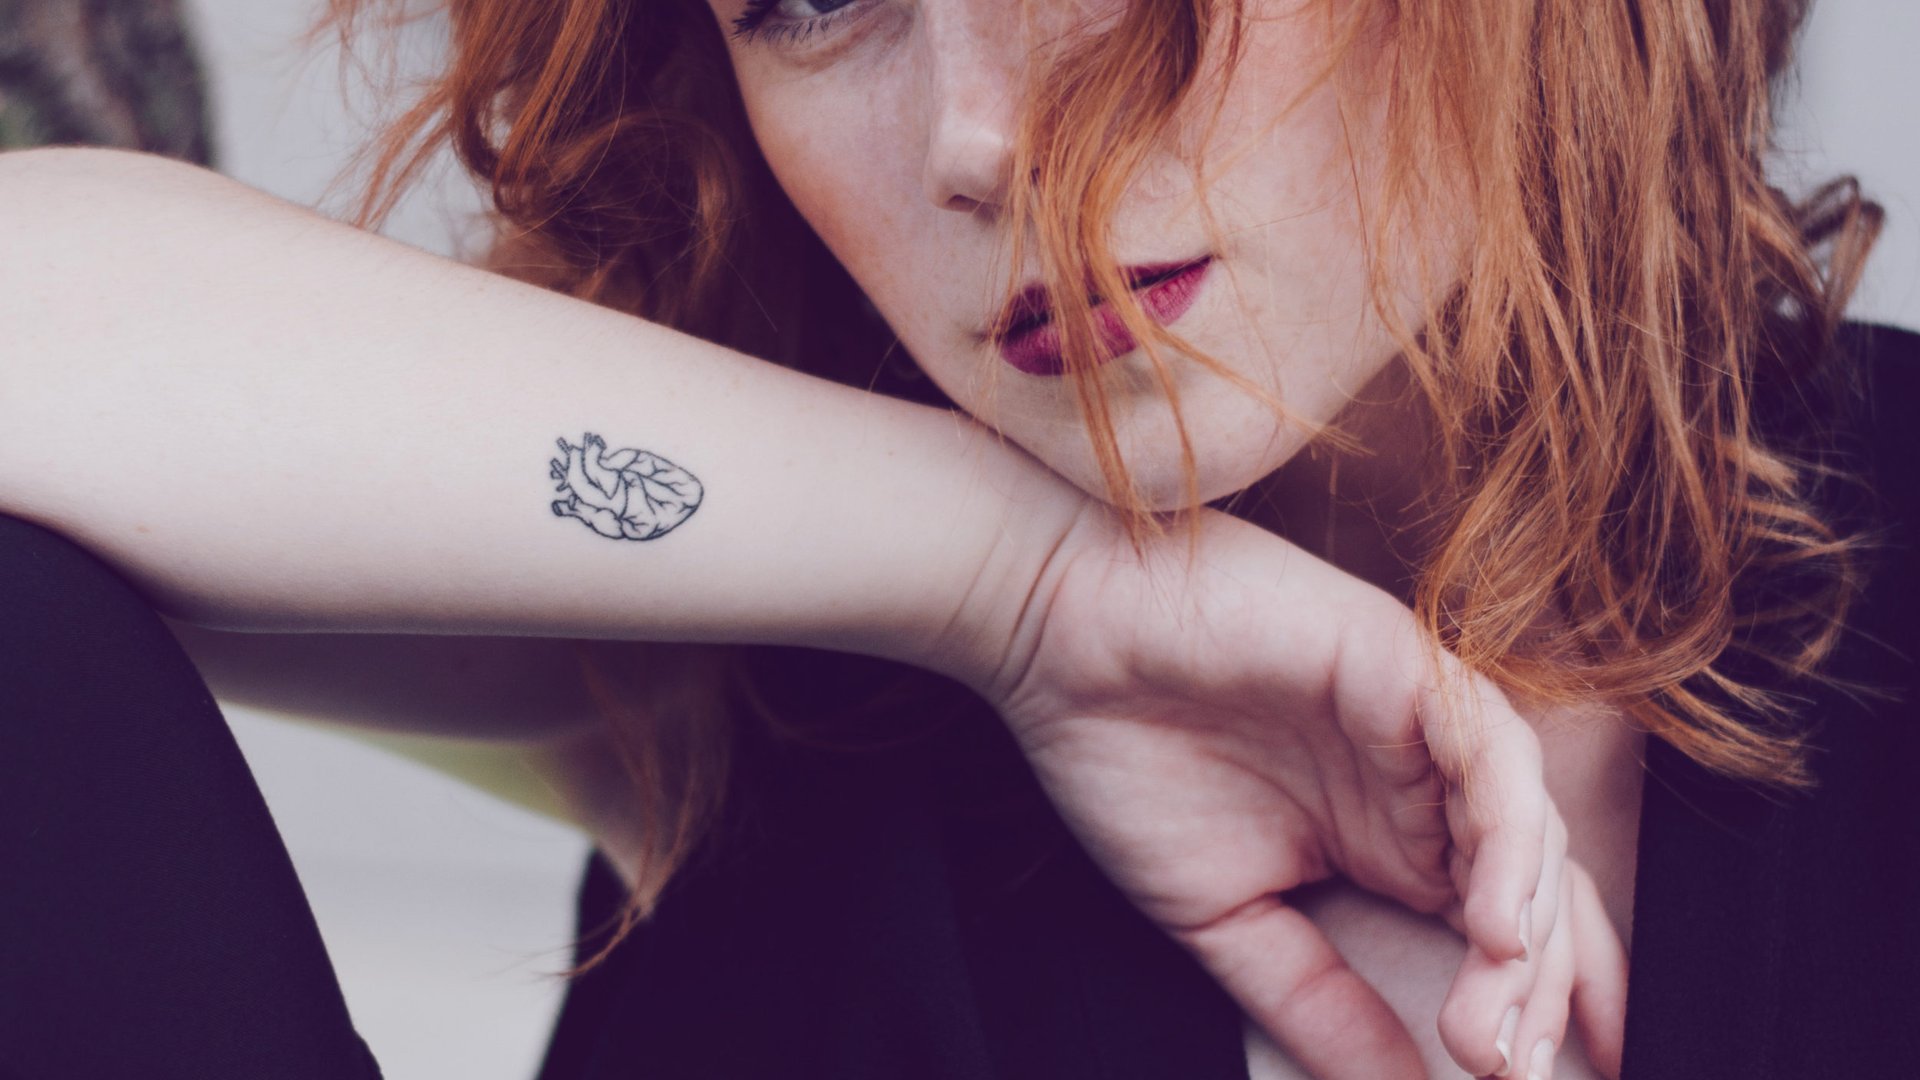 Frauen tattoo bilder arm Tattoo Motive